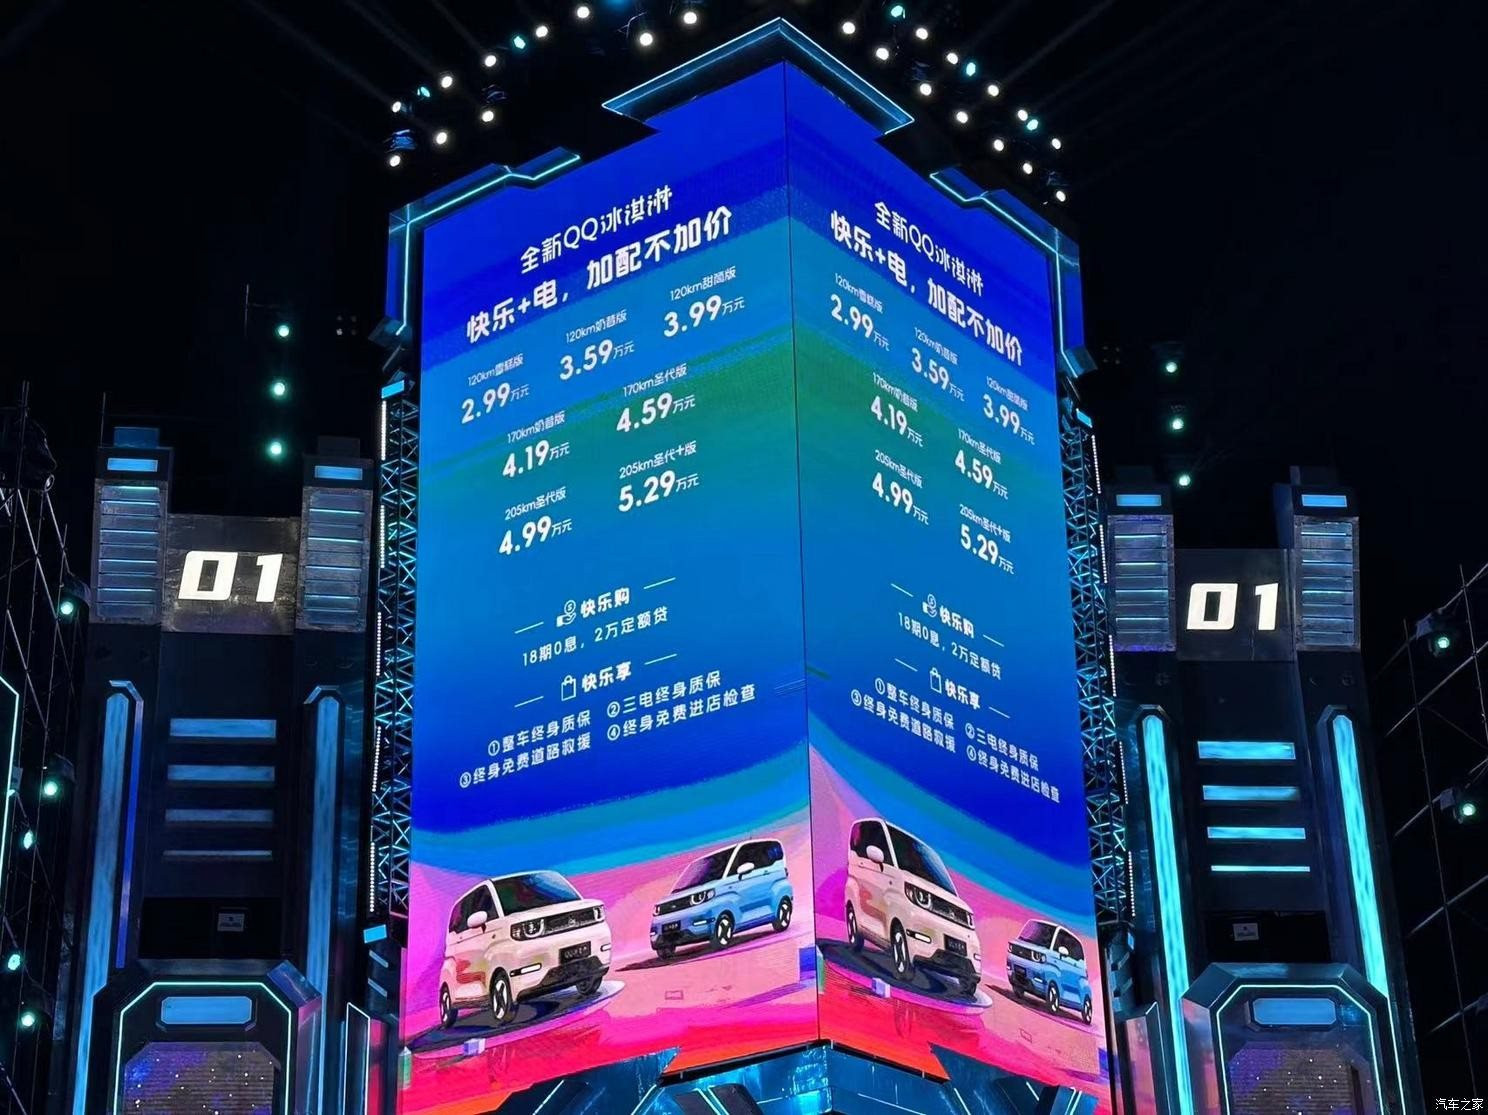 Thêm một mẫu xe điện mini giá ngang Honda SH ra mắt: Sạc 30%-80% chỉ mất 75 phút, đe dọa Wuling HongGuang MiniEV - Ảnh 8.